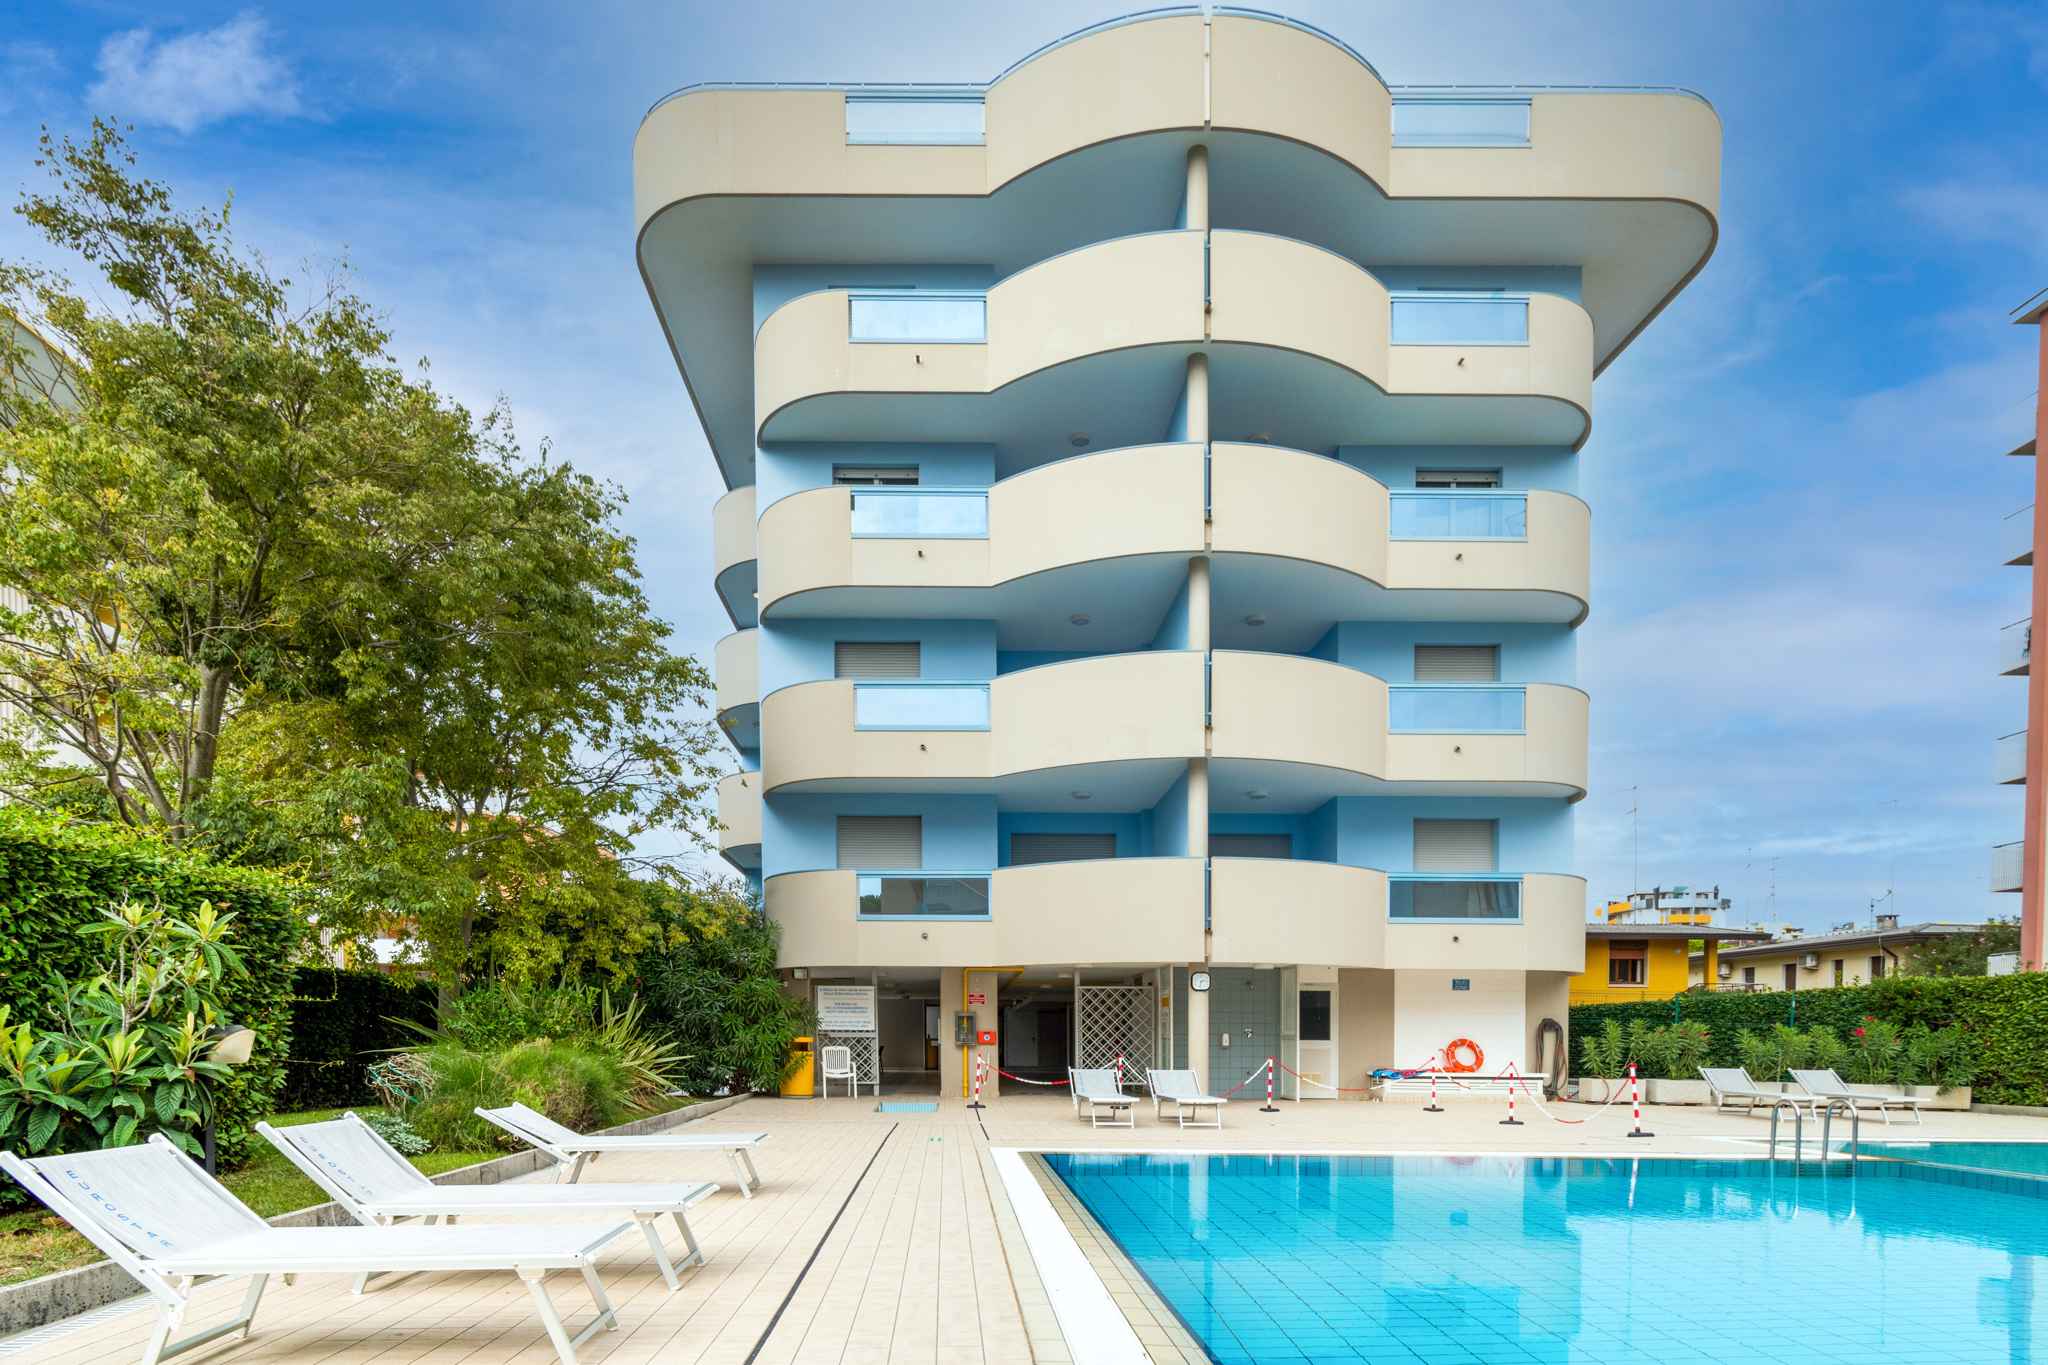 Ferienwohnung in einem Residence mit Pool  in Italien